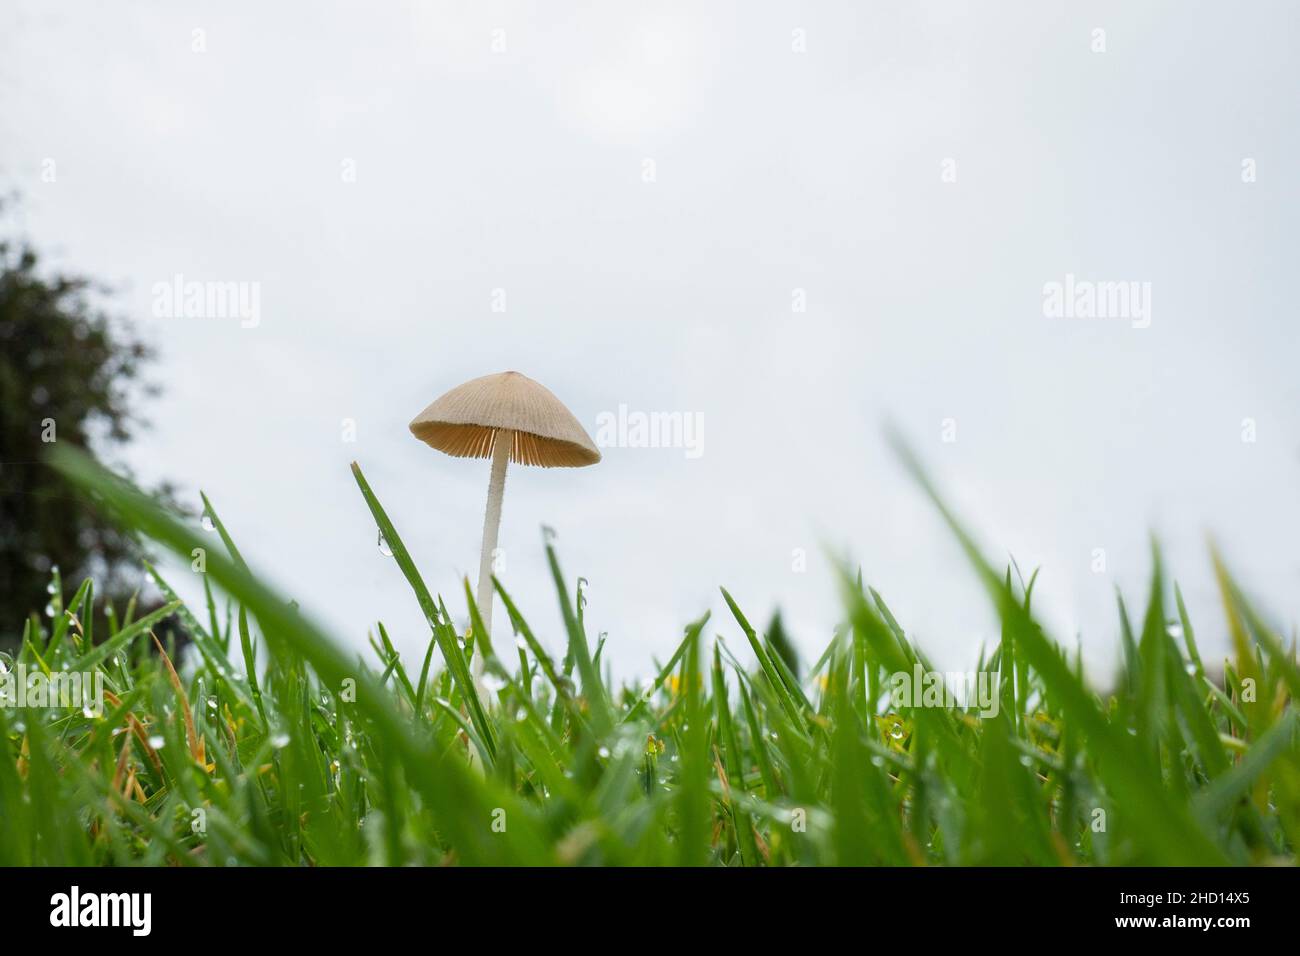 Nach heftigem Regen taucht ein winziger Wildpilz auf dem Rasen auf Stockfoto